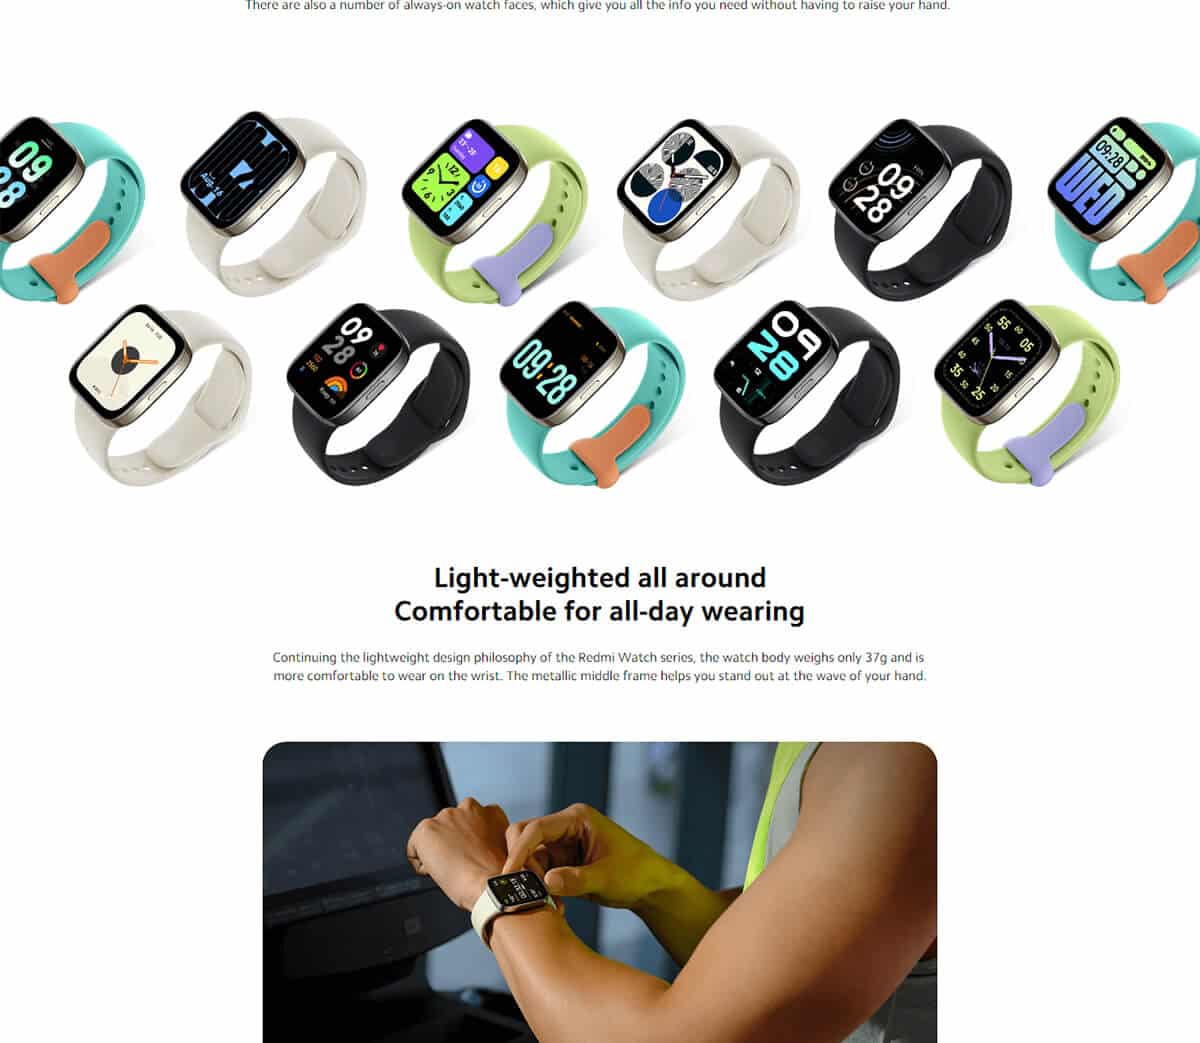 ساعت هوشمند شیائومی مدل Redmi Watch 3